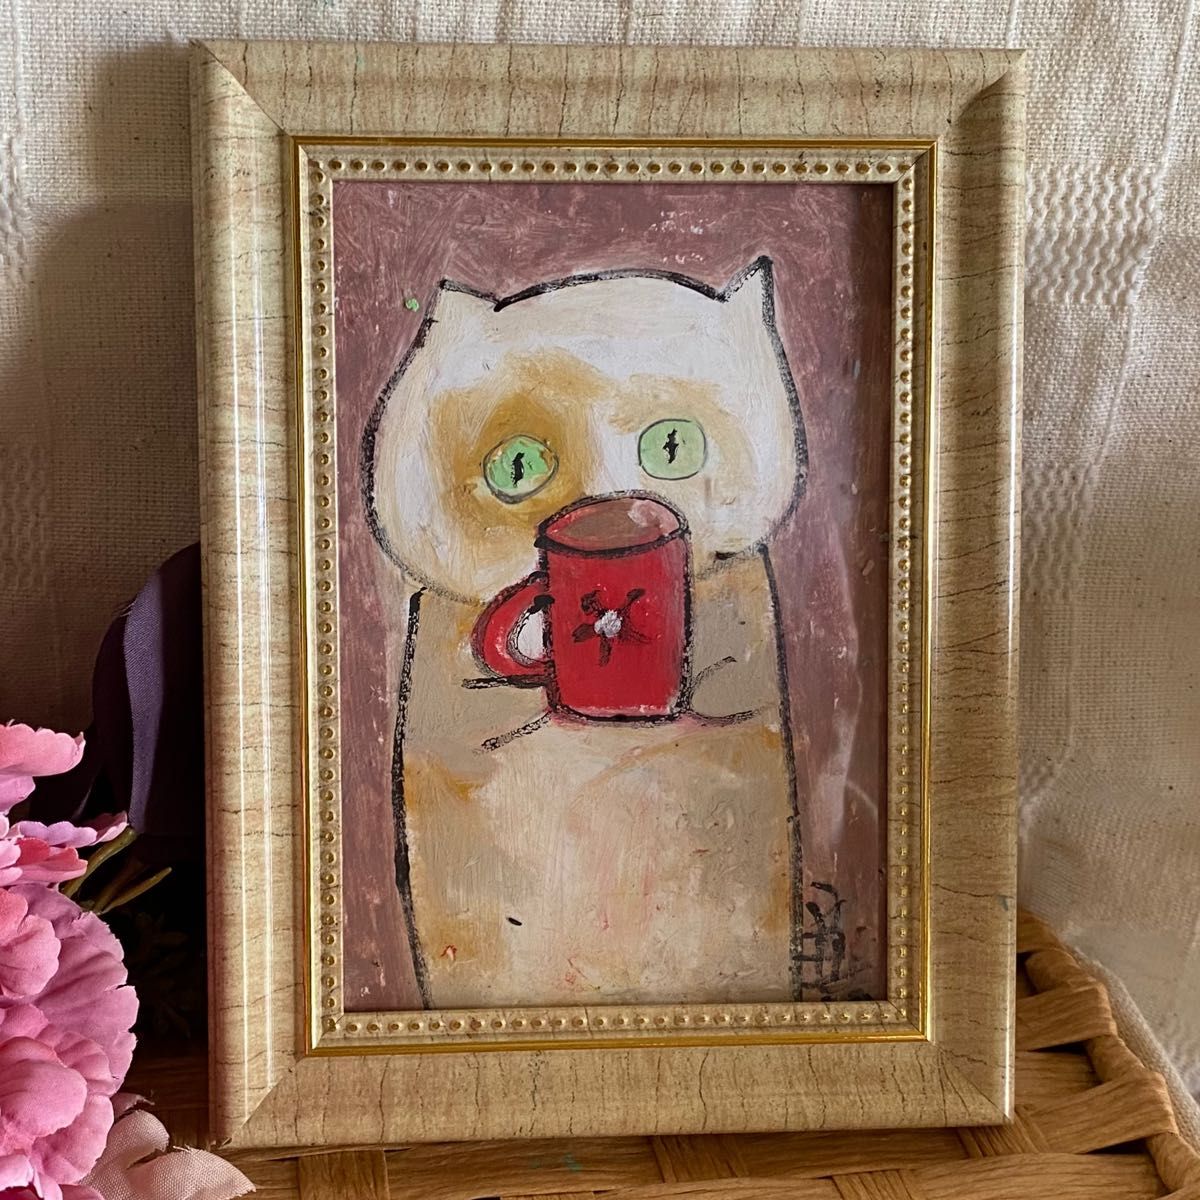 絵画。原画手描【かわいい猫ちゃんが好きな赤いマグカップを持っている】